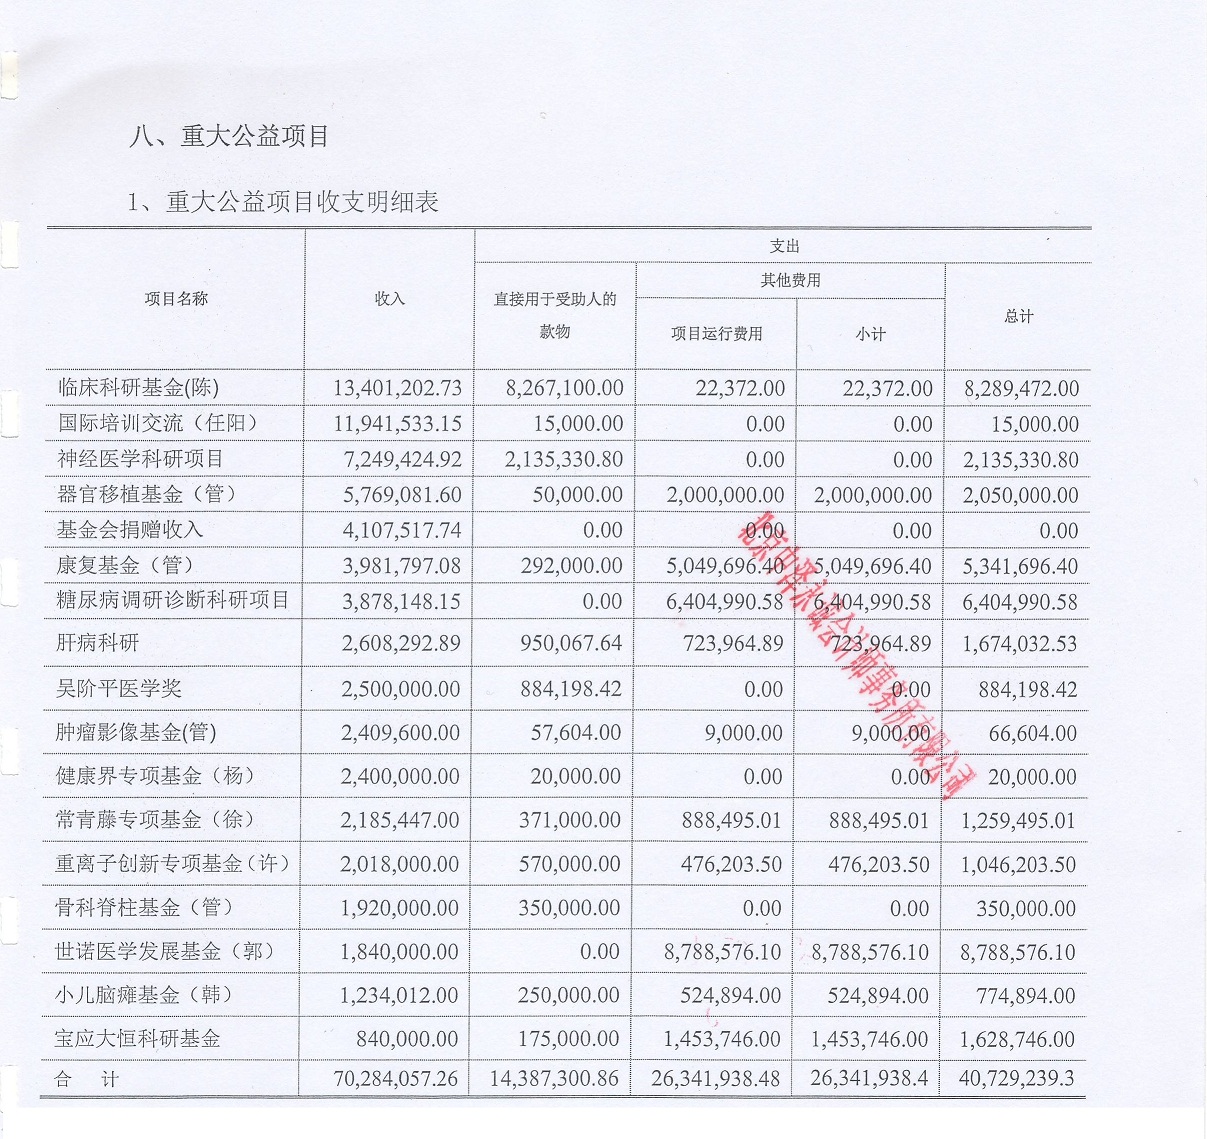 2016年吴阶平医学基金会重大捐赠及支出明细表.jpg